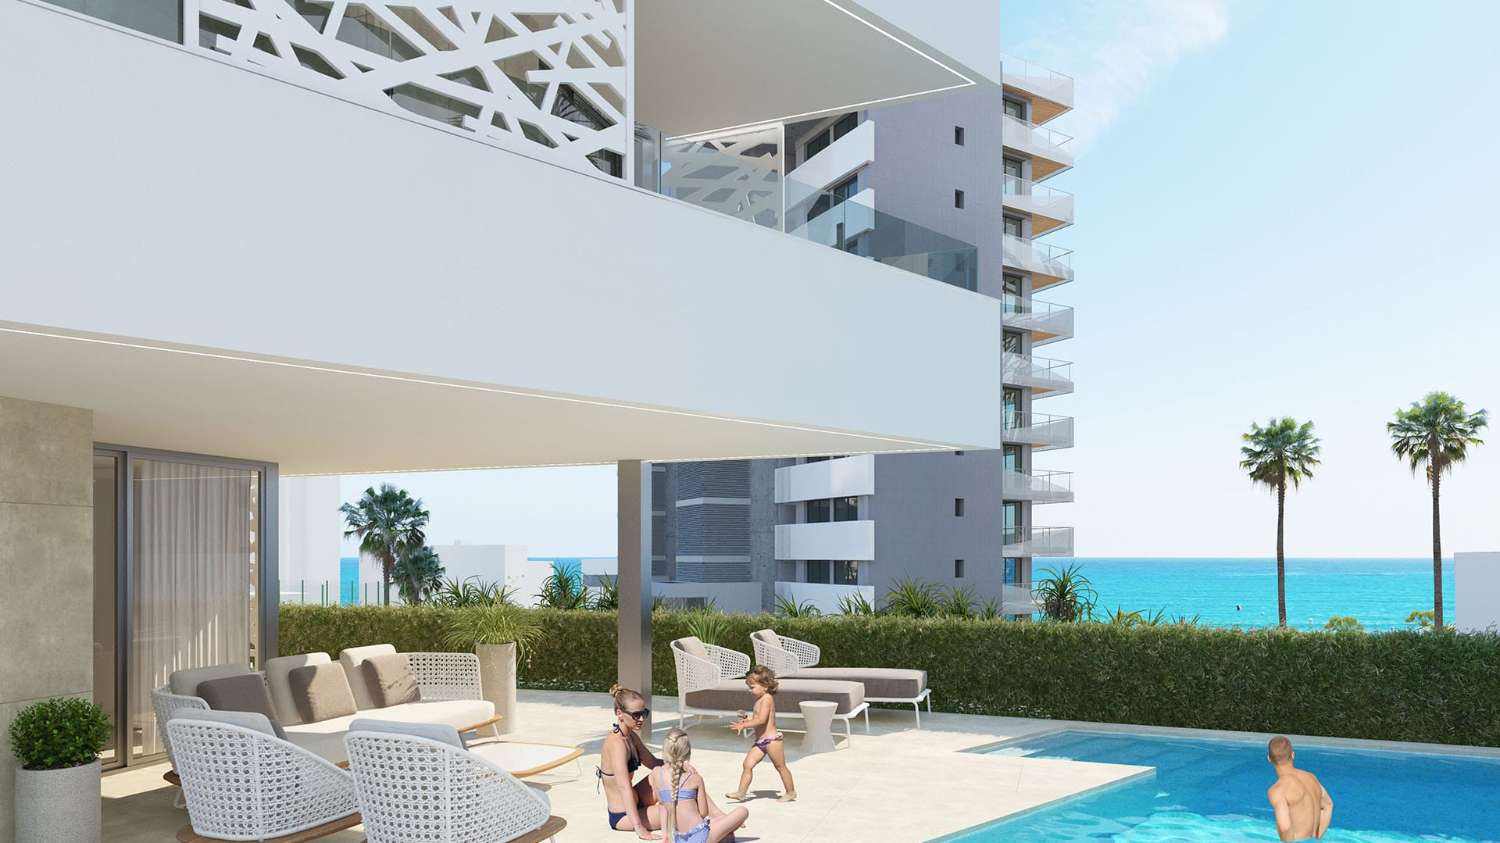 Viviendas unifamiliares exclusivas en Playa de San Juan, Alicante